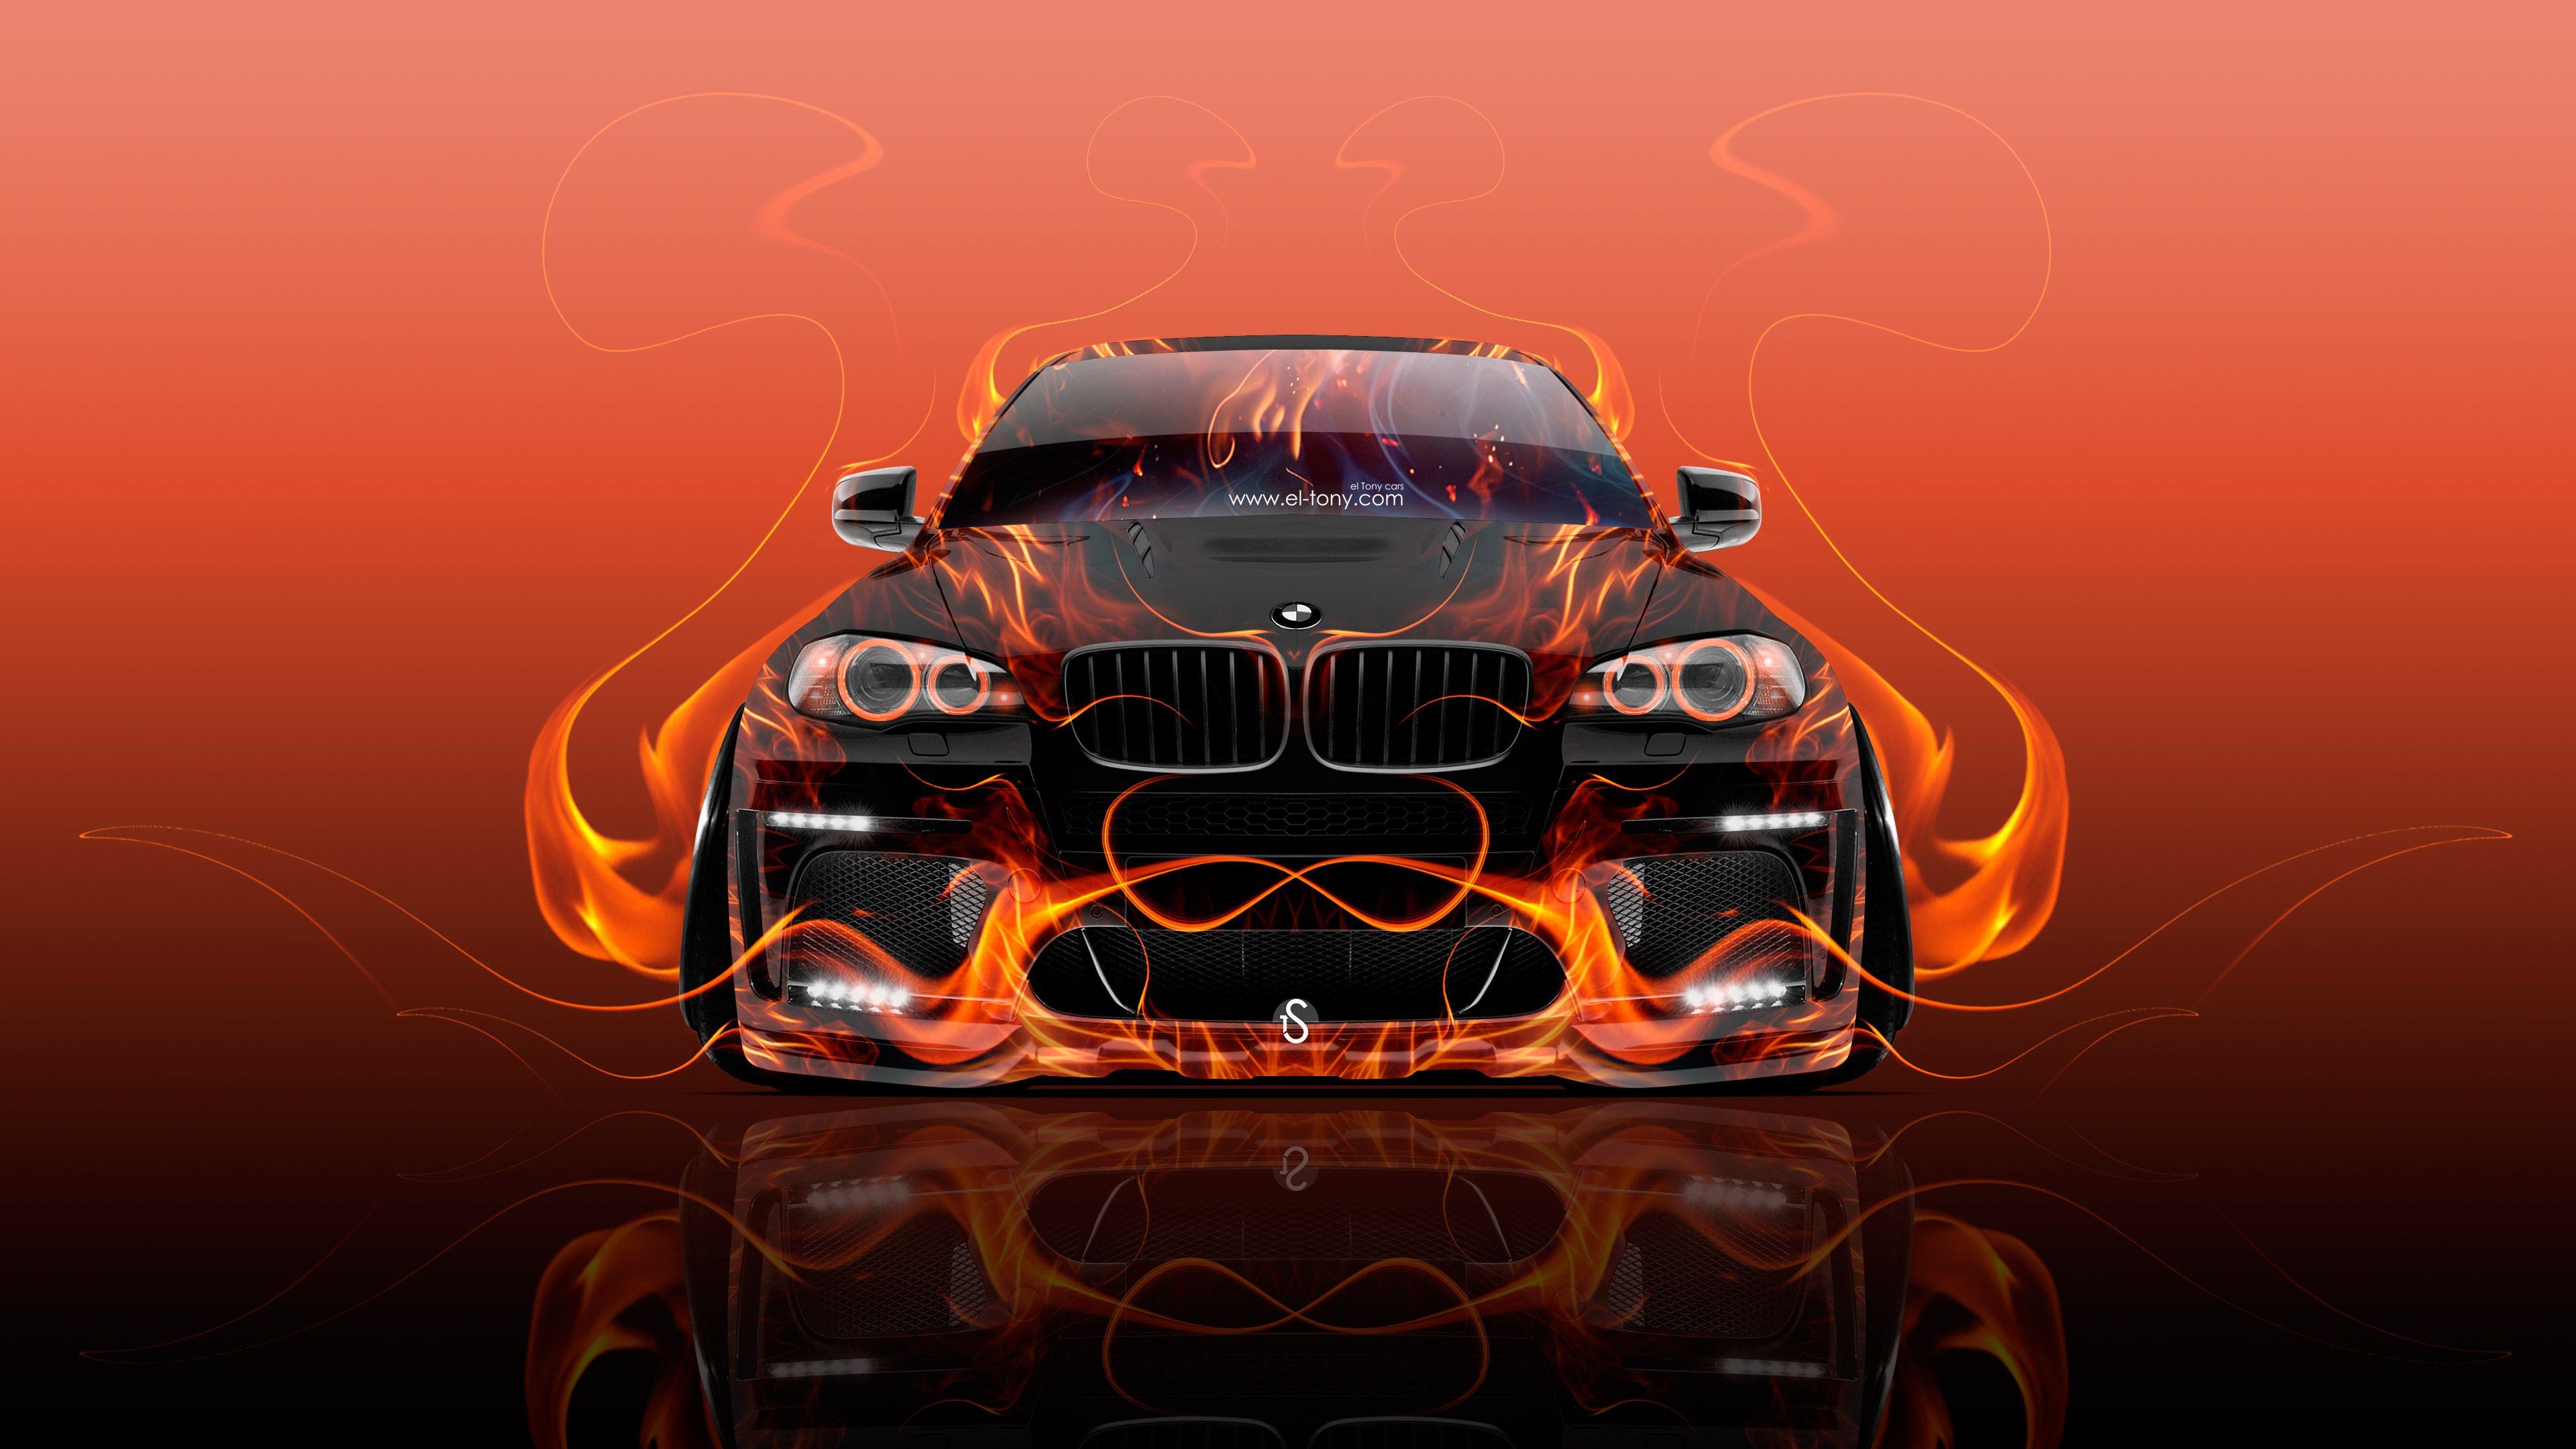 BMW X6 Front Fire Abstract Car 2015 Wallpaper el Tony Cars. INO